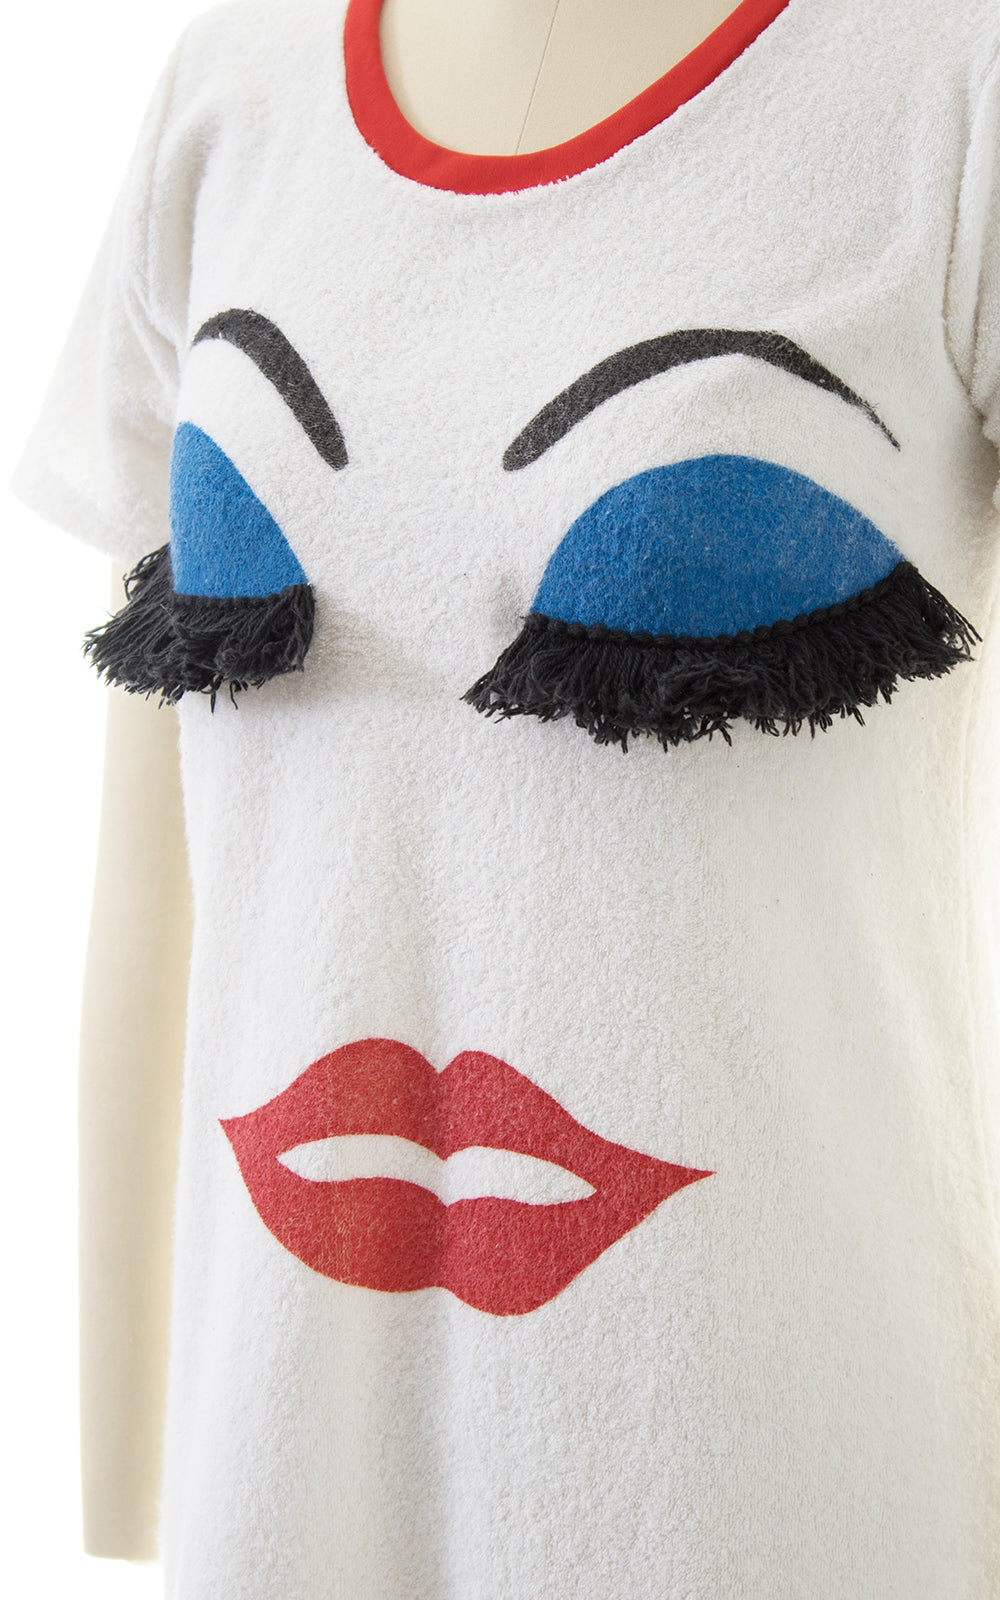 1980s Makeup Face Novelty Terrycloth Dress with Fringe Eyelashes